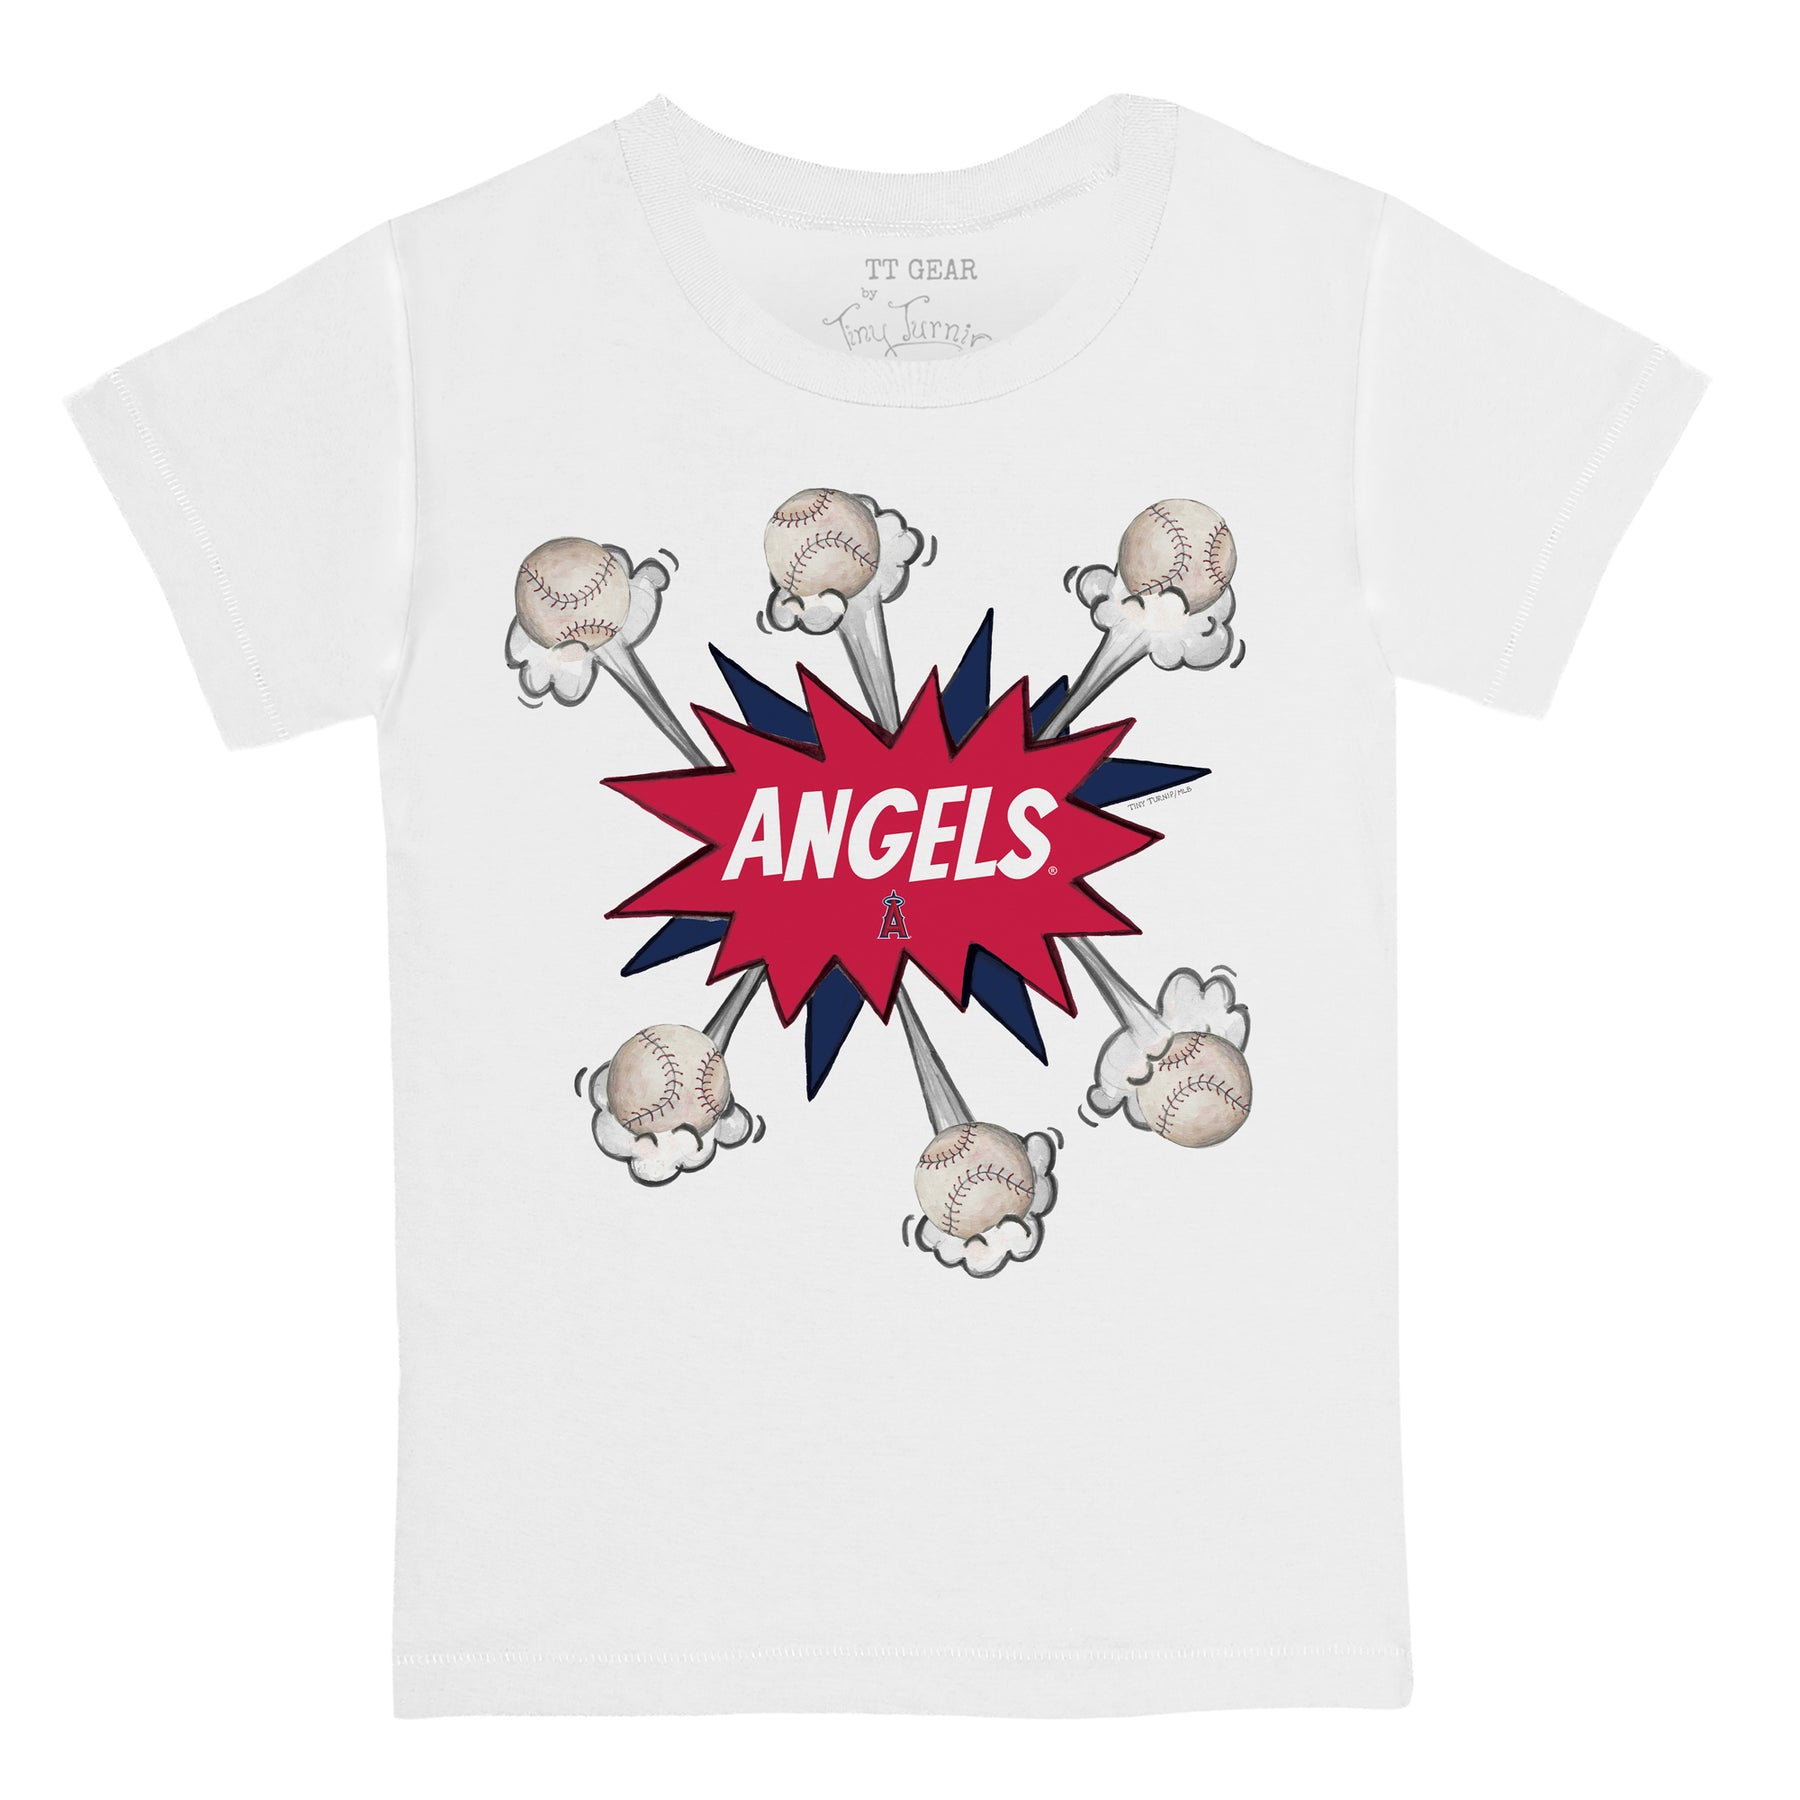 la angels shirt